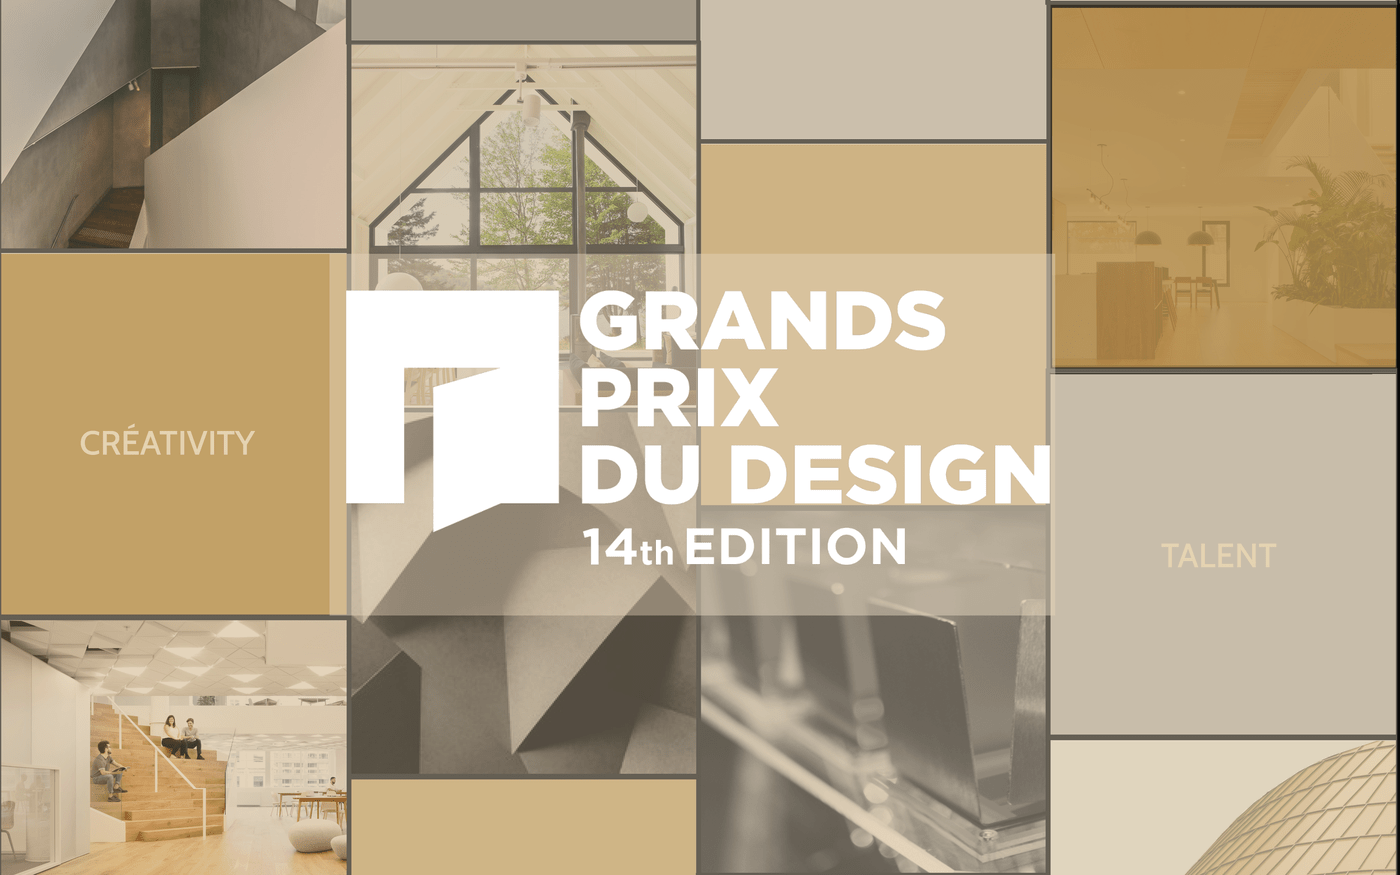 The GRANDS PRIX DU DESIGN Awards 2021